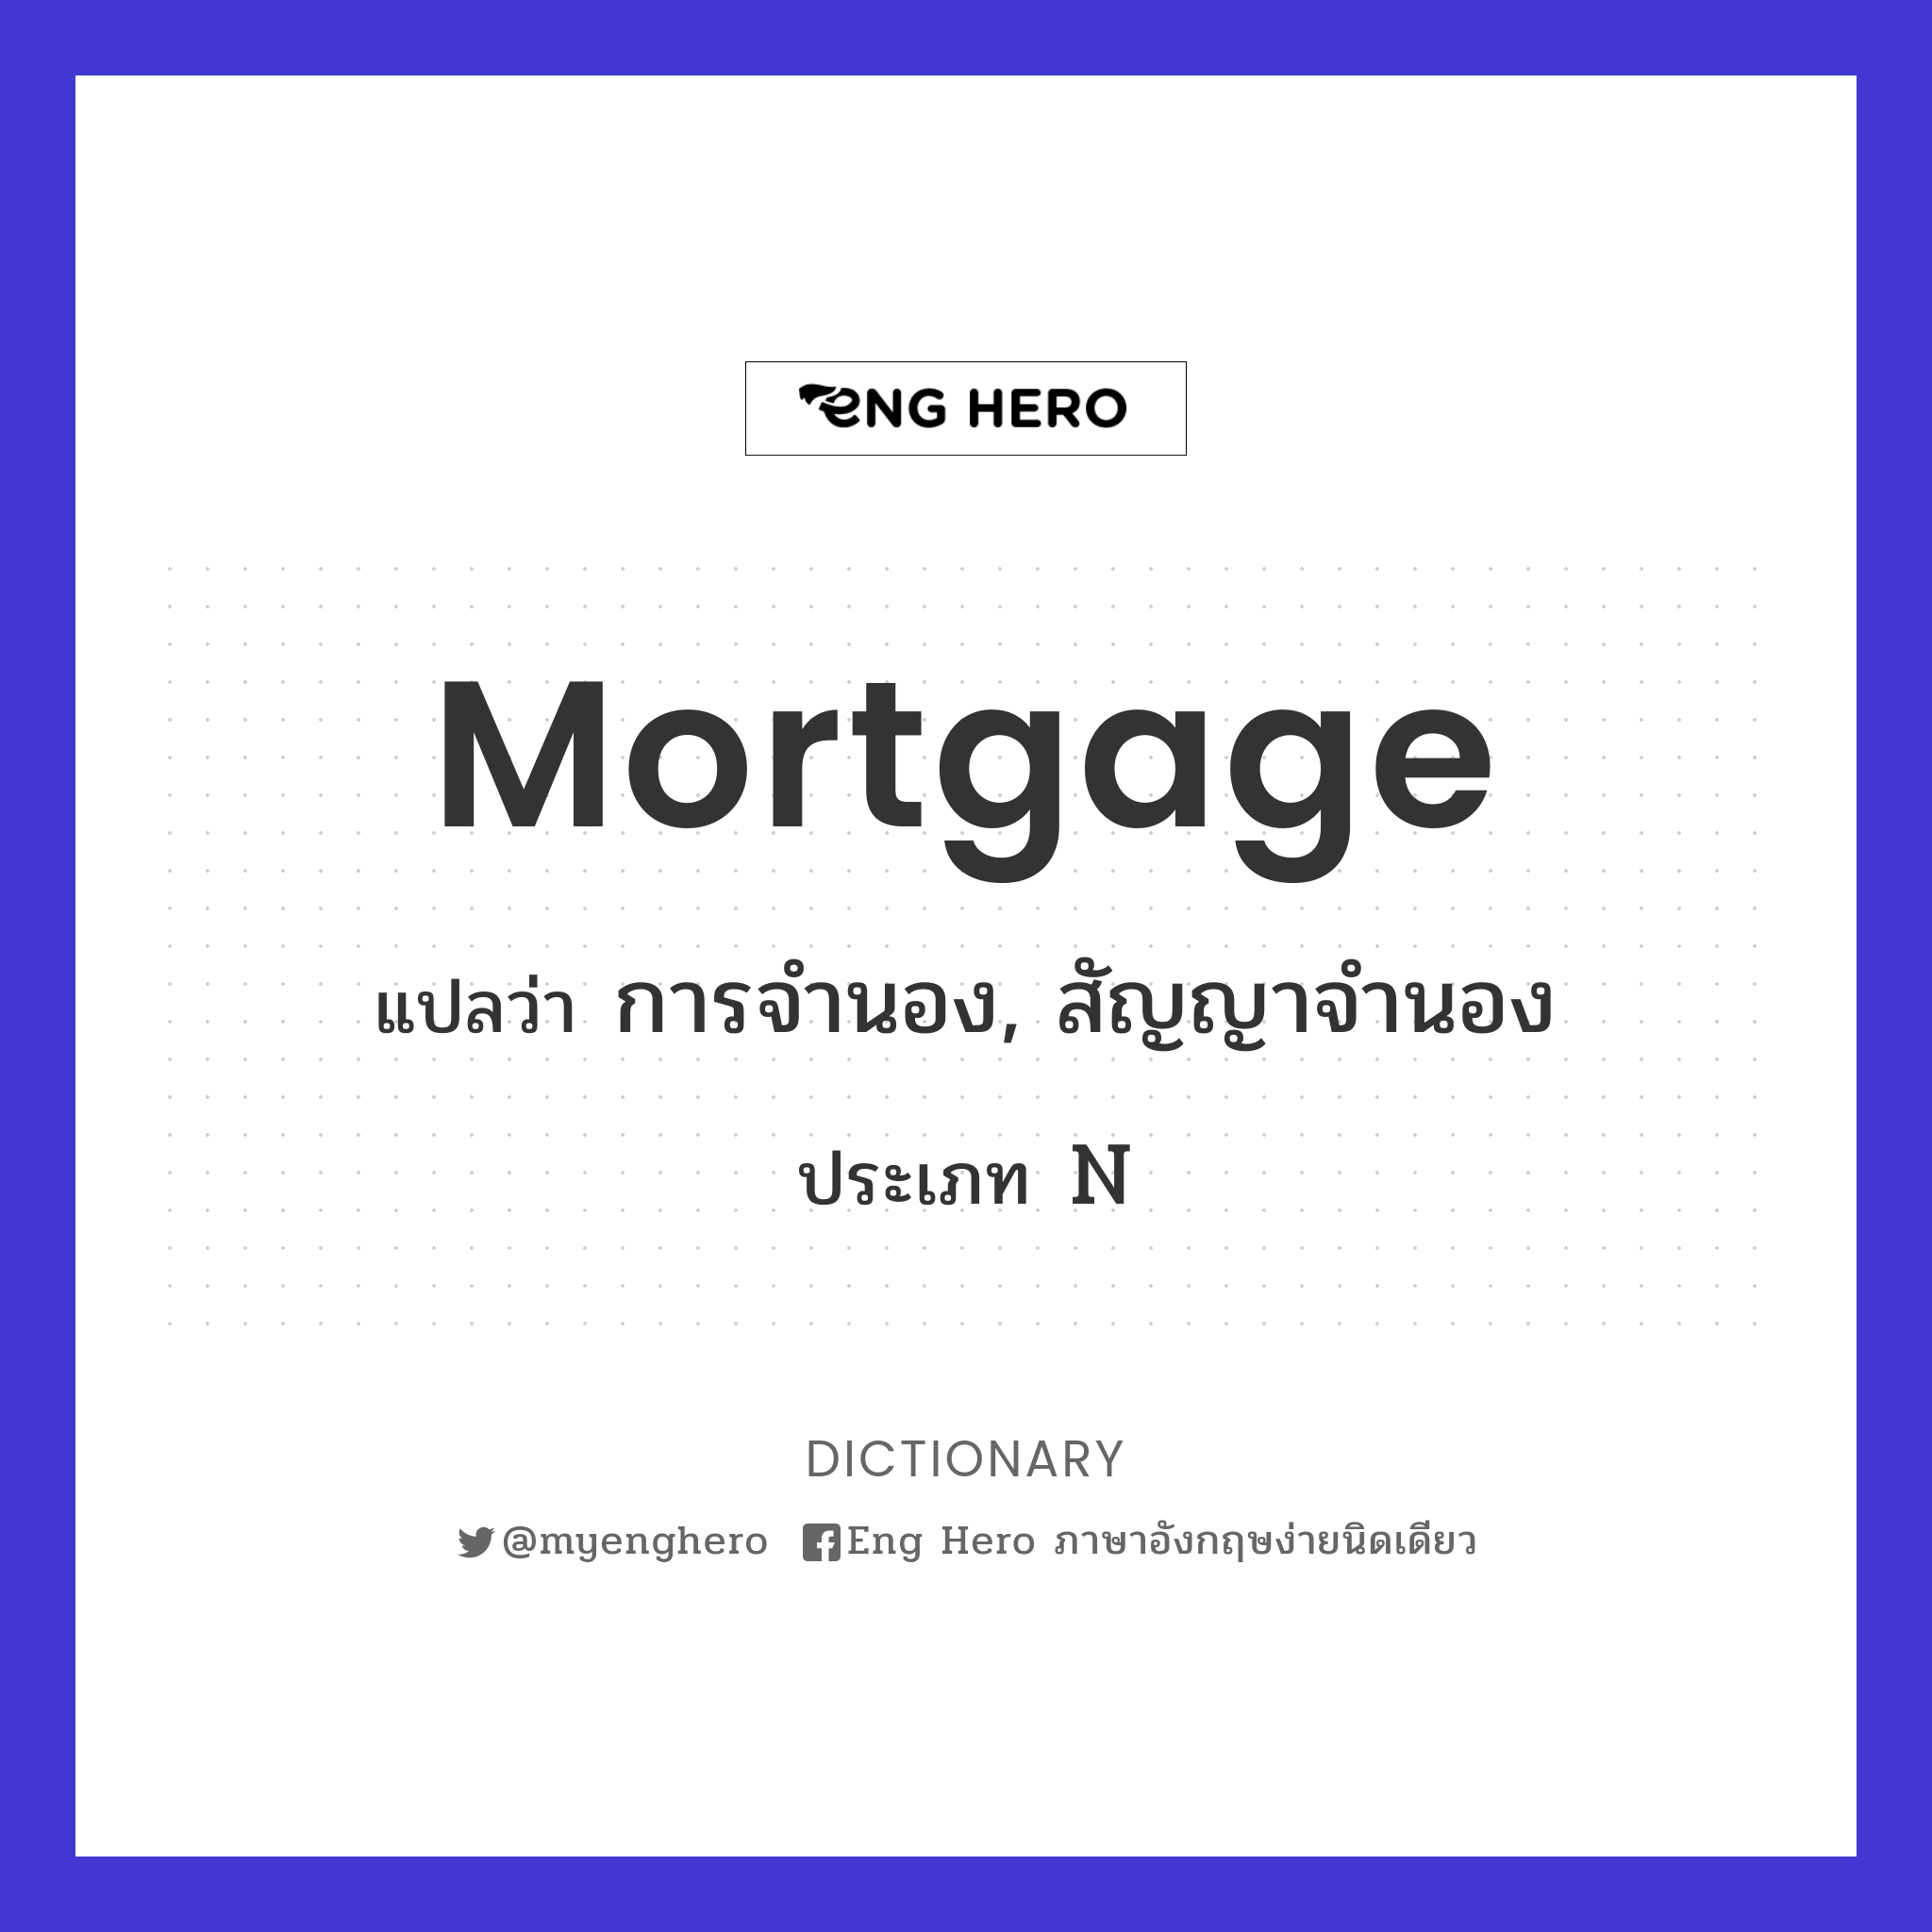 mortgage